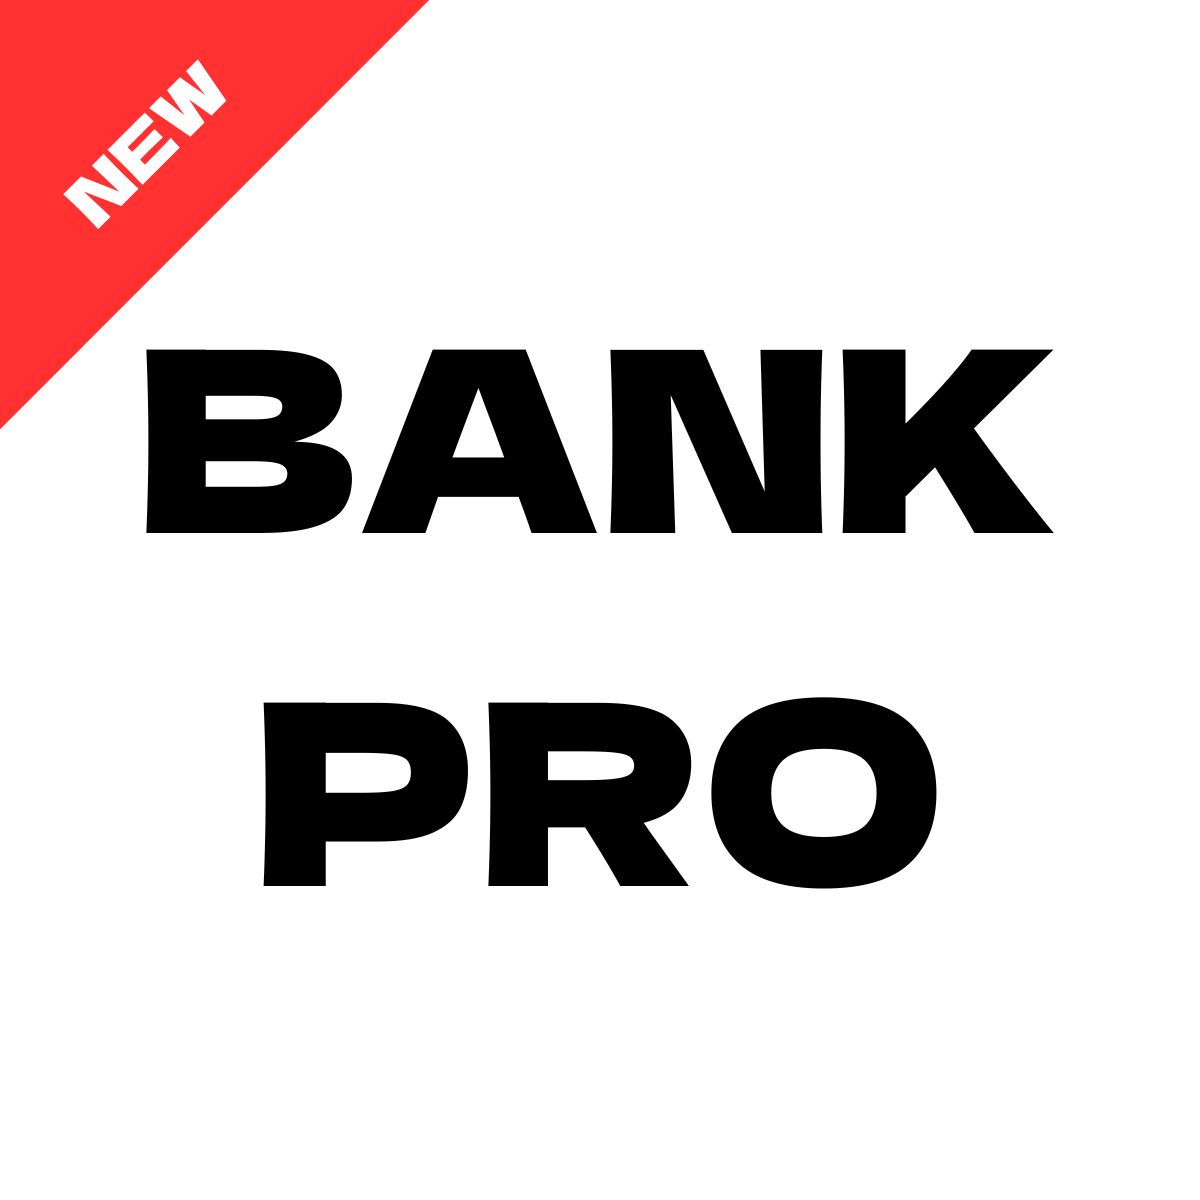 BANK PRO Tự động giao dịch